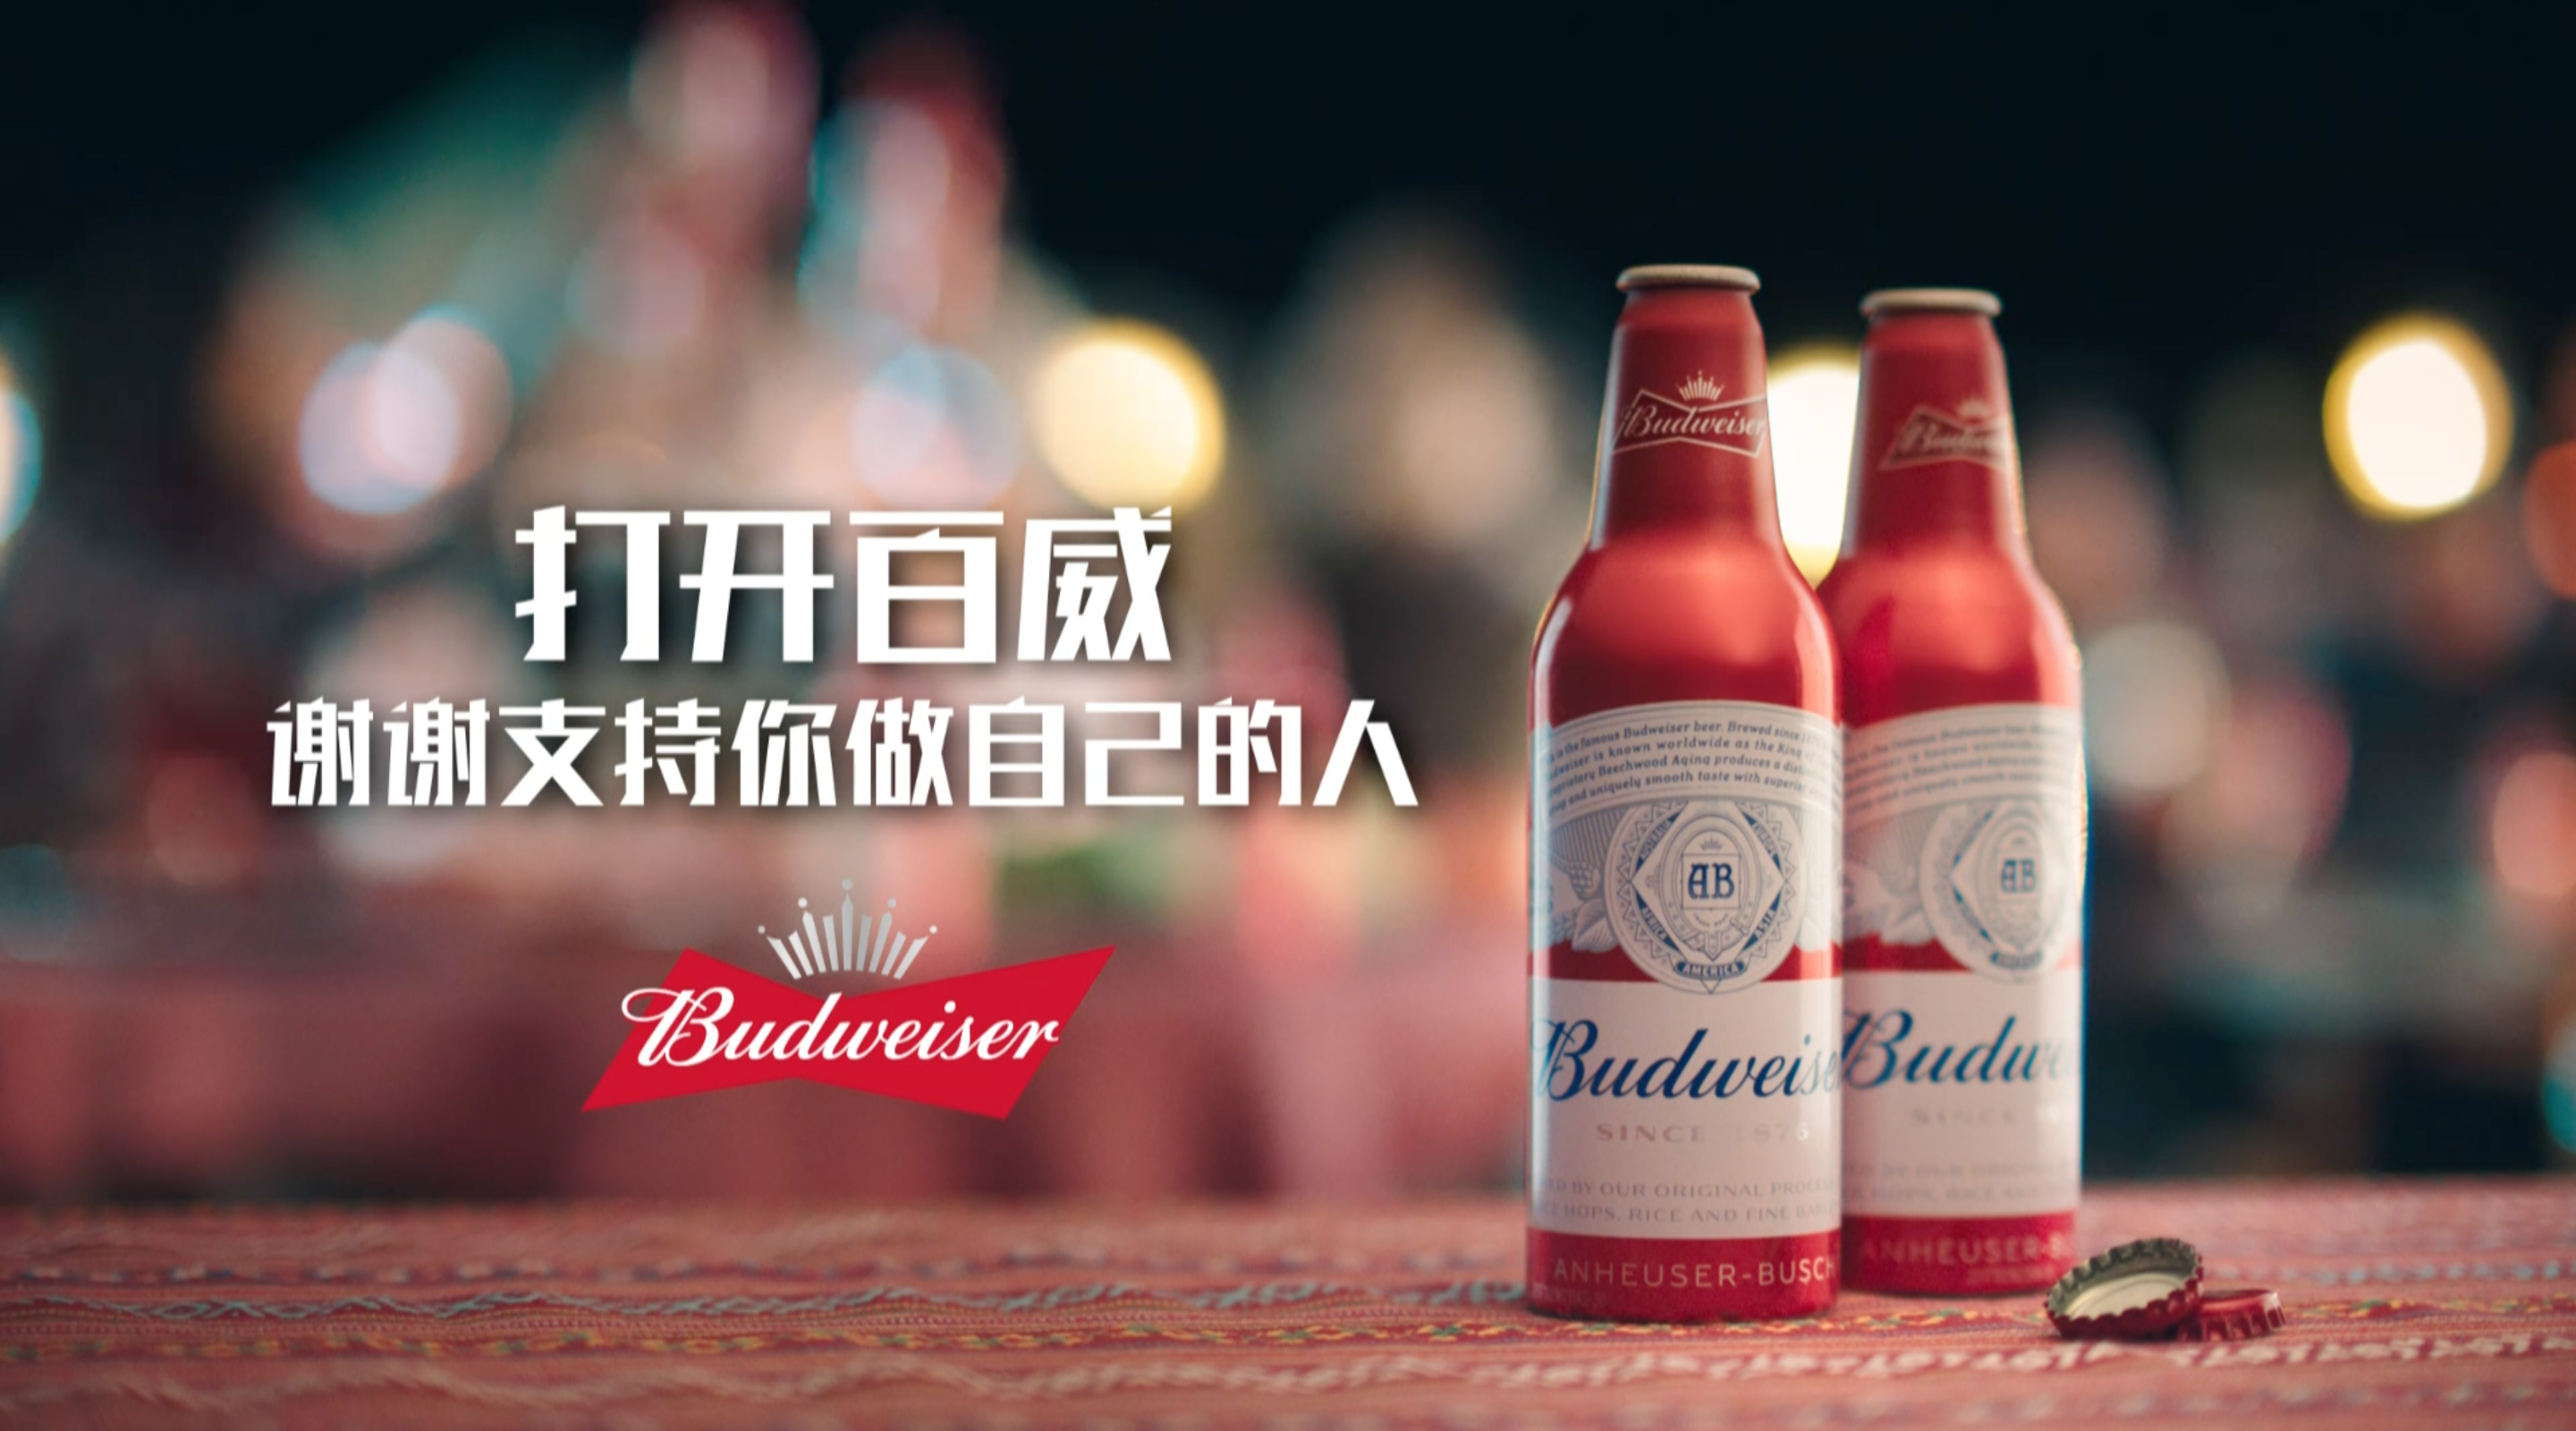 百威中国启动2018新年广告战役，号召消费者感谢支持他们的人